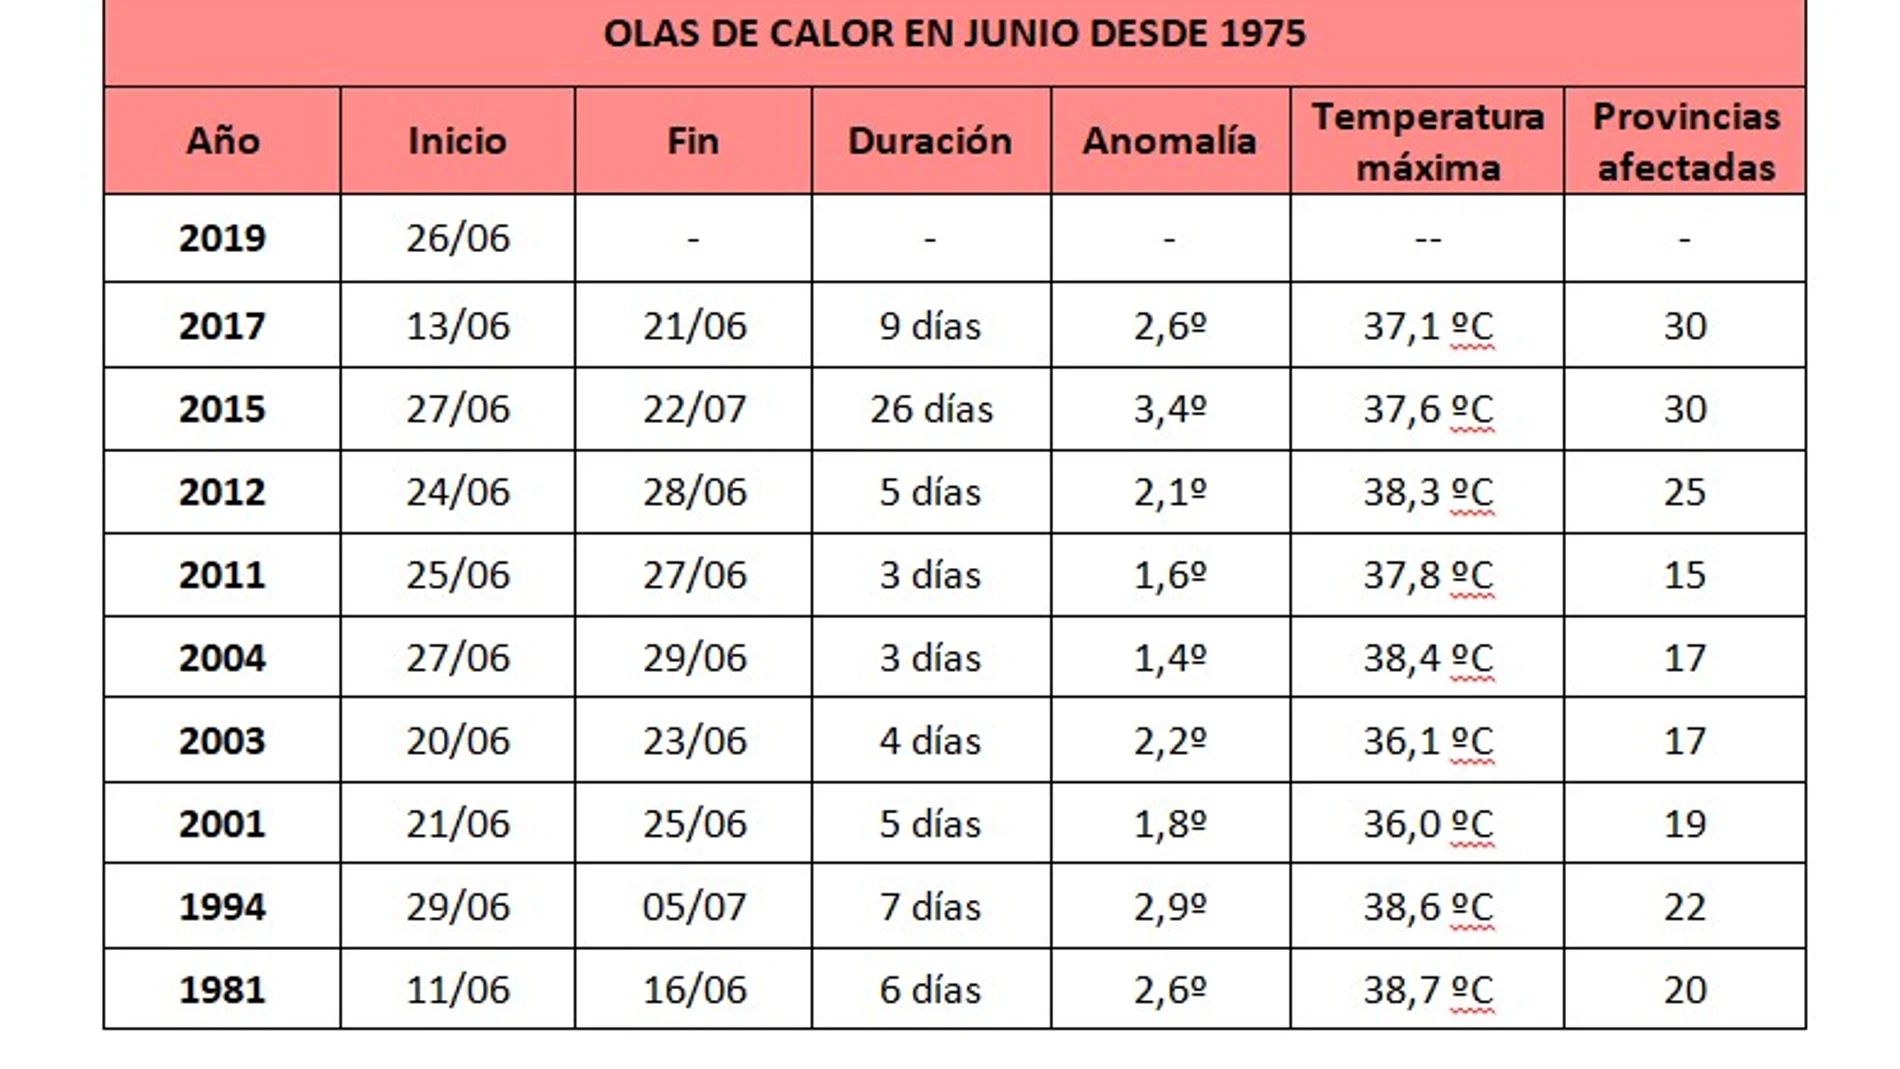 Tabla de olas de calor en junio desde 1975